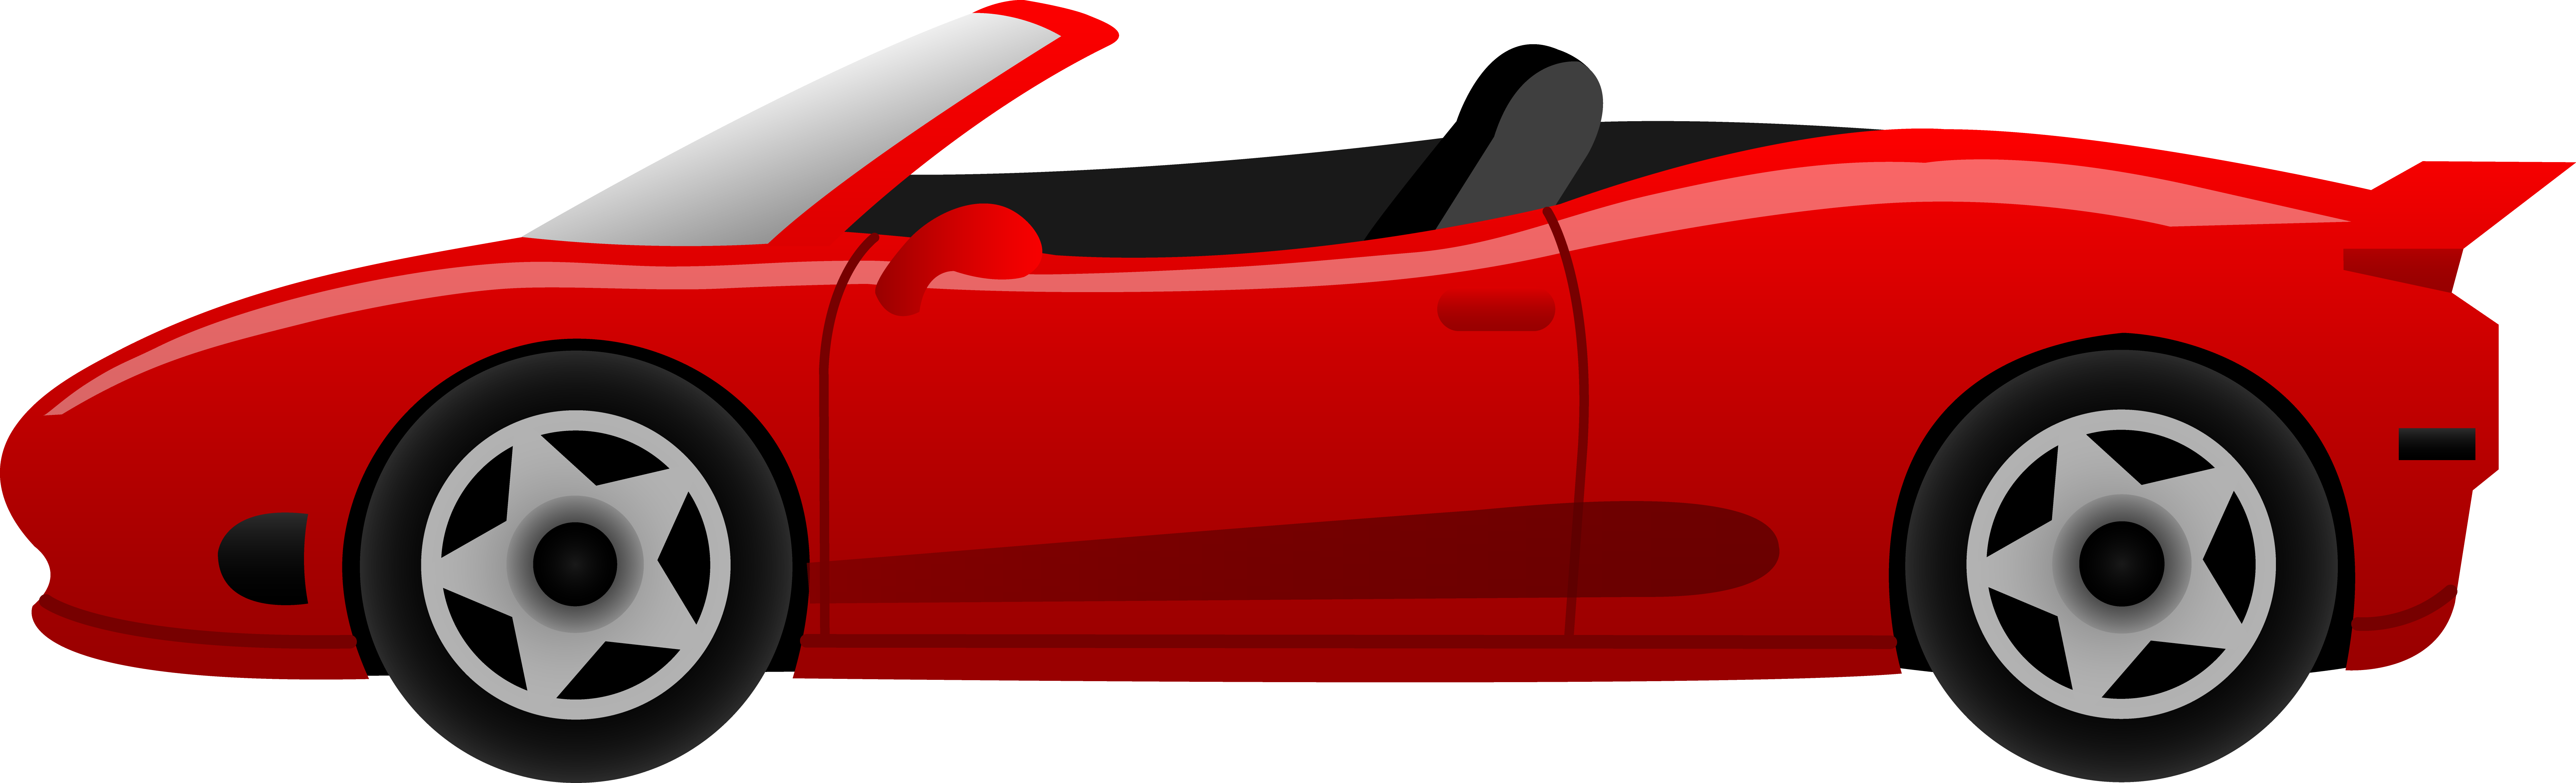 Red Ferrari Car - Free Clip Art